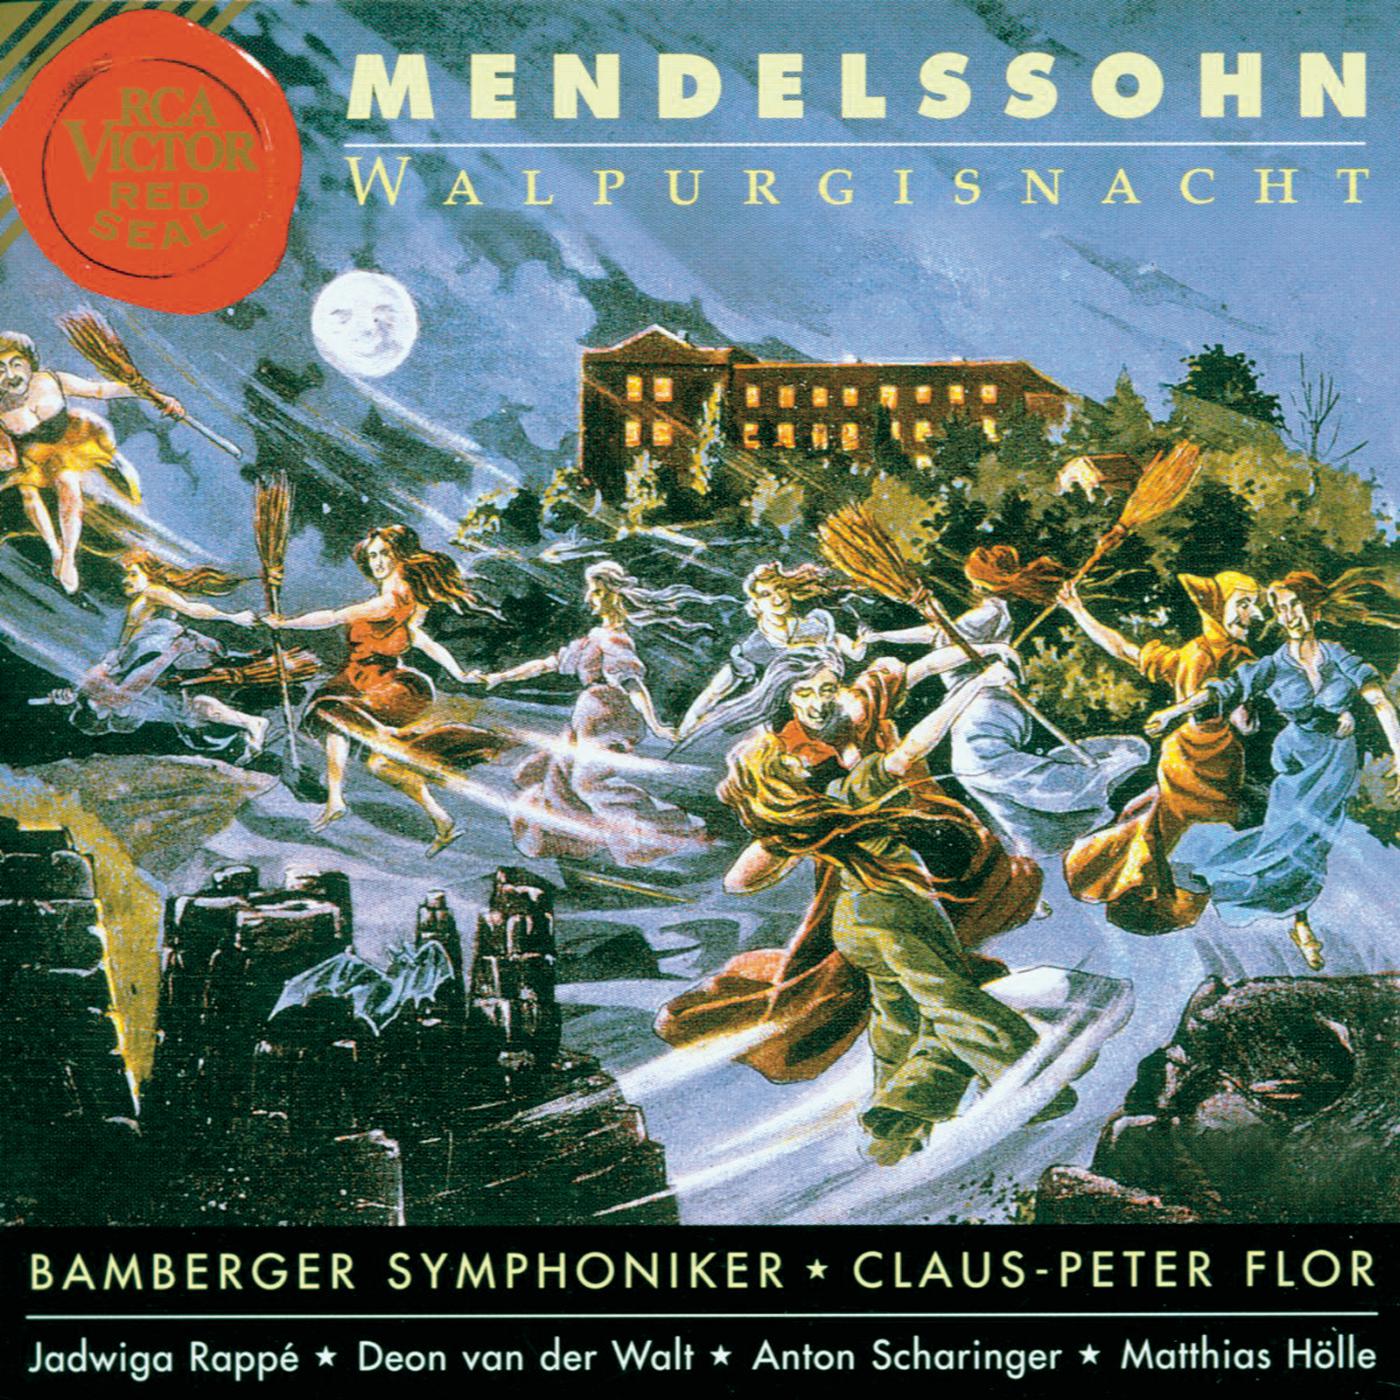 Leise zieht durch mein Gemü th, 12 Lieder von Mendelssohn, Arr. for Orchestra by Siegfried Matthus: Auf Flü geln des Gesanges, Op. 34, No. 2